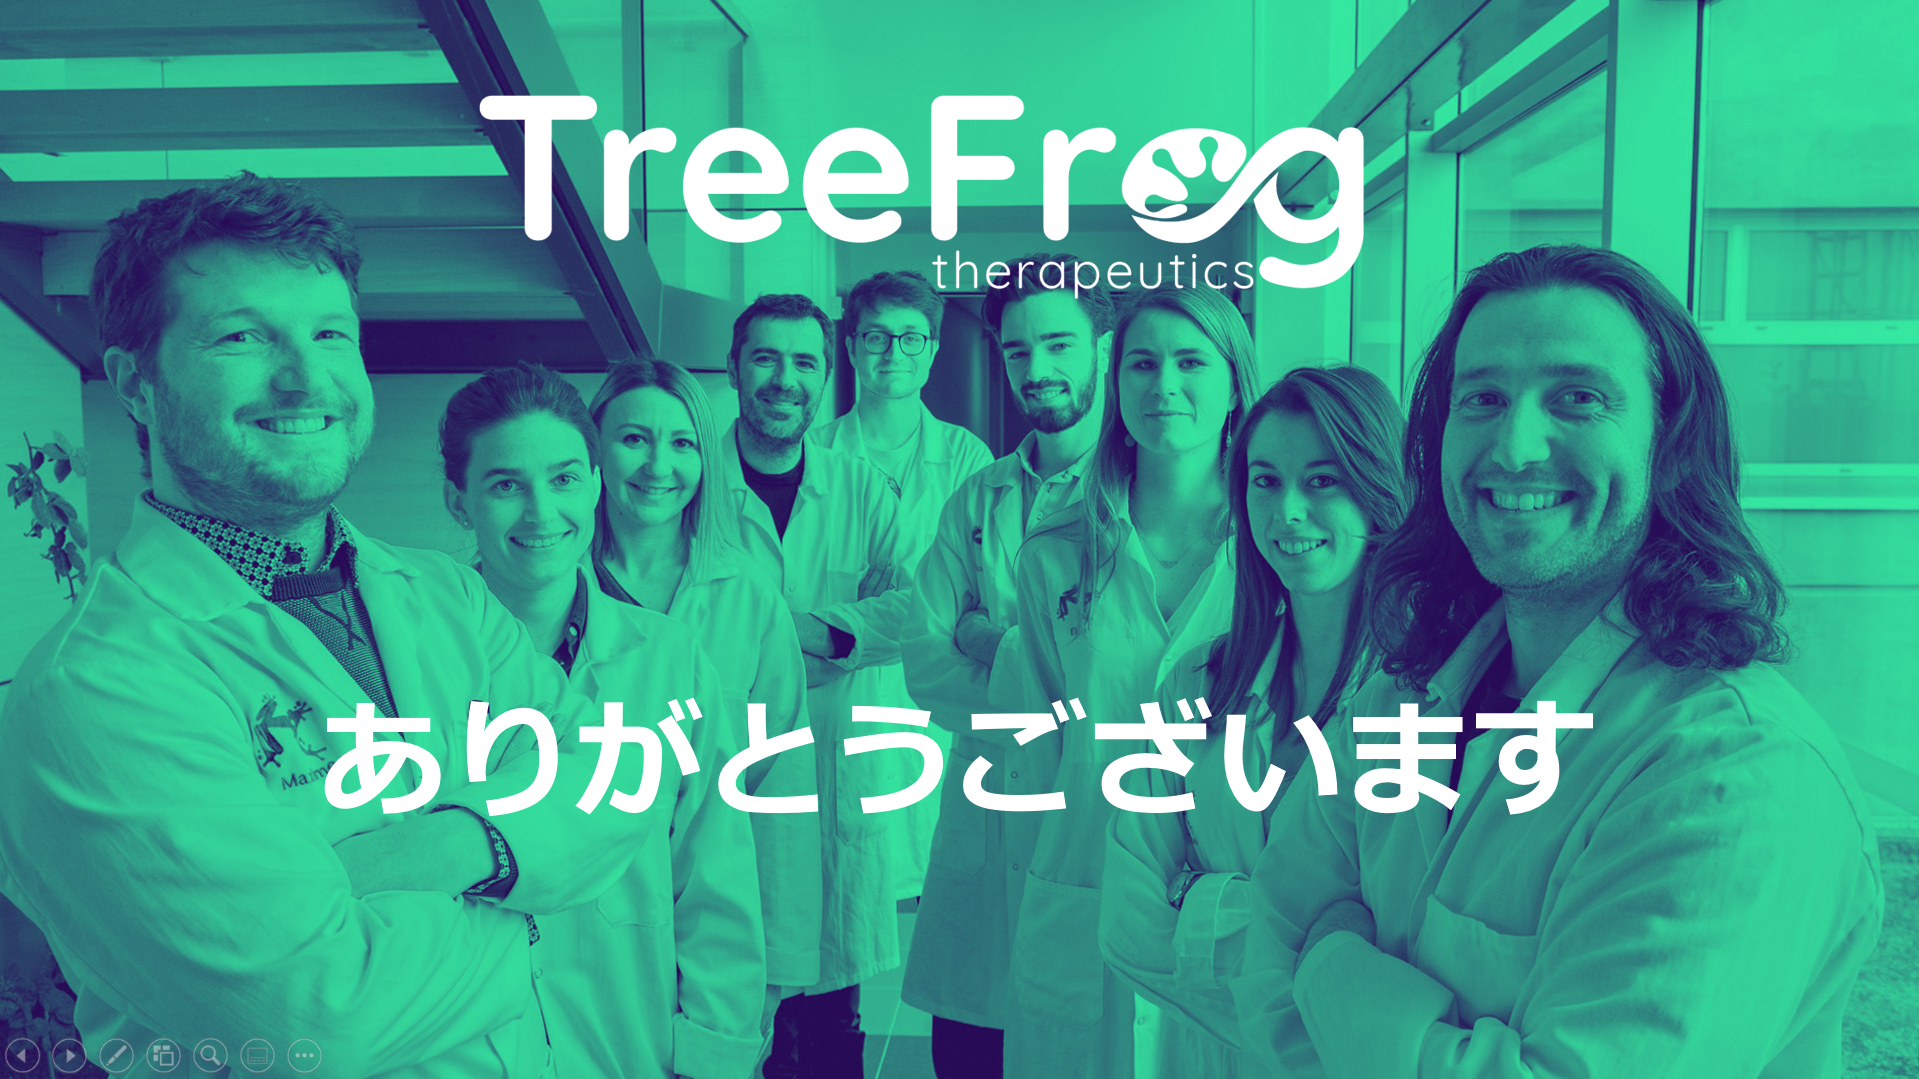 TreeFrog in Japanese !